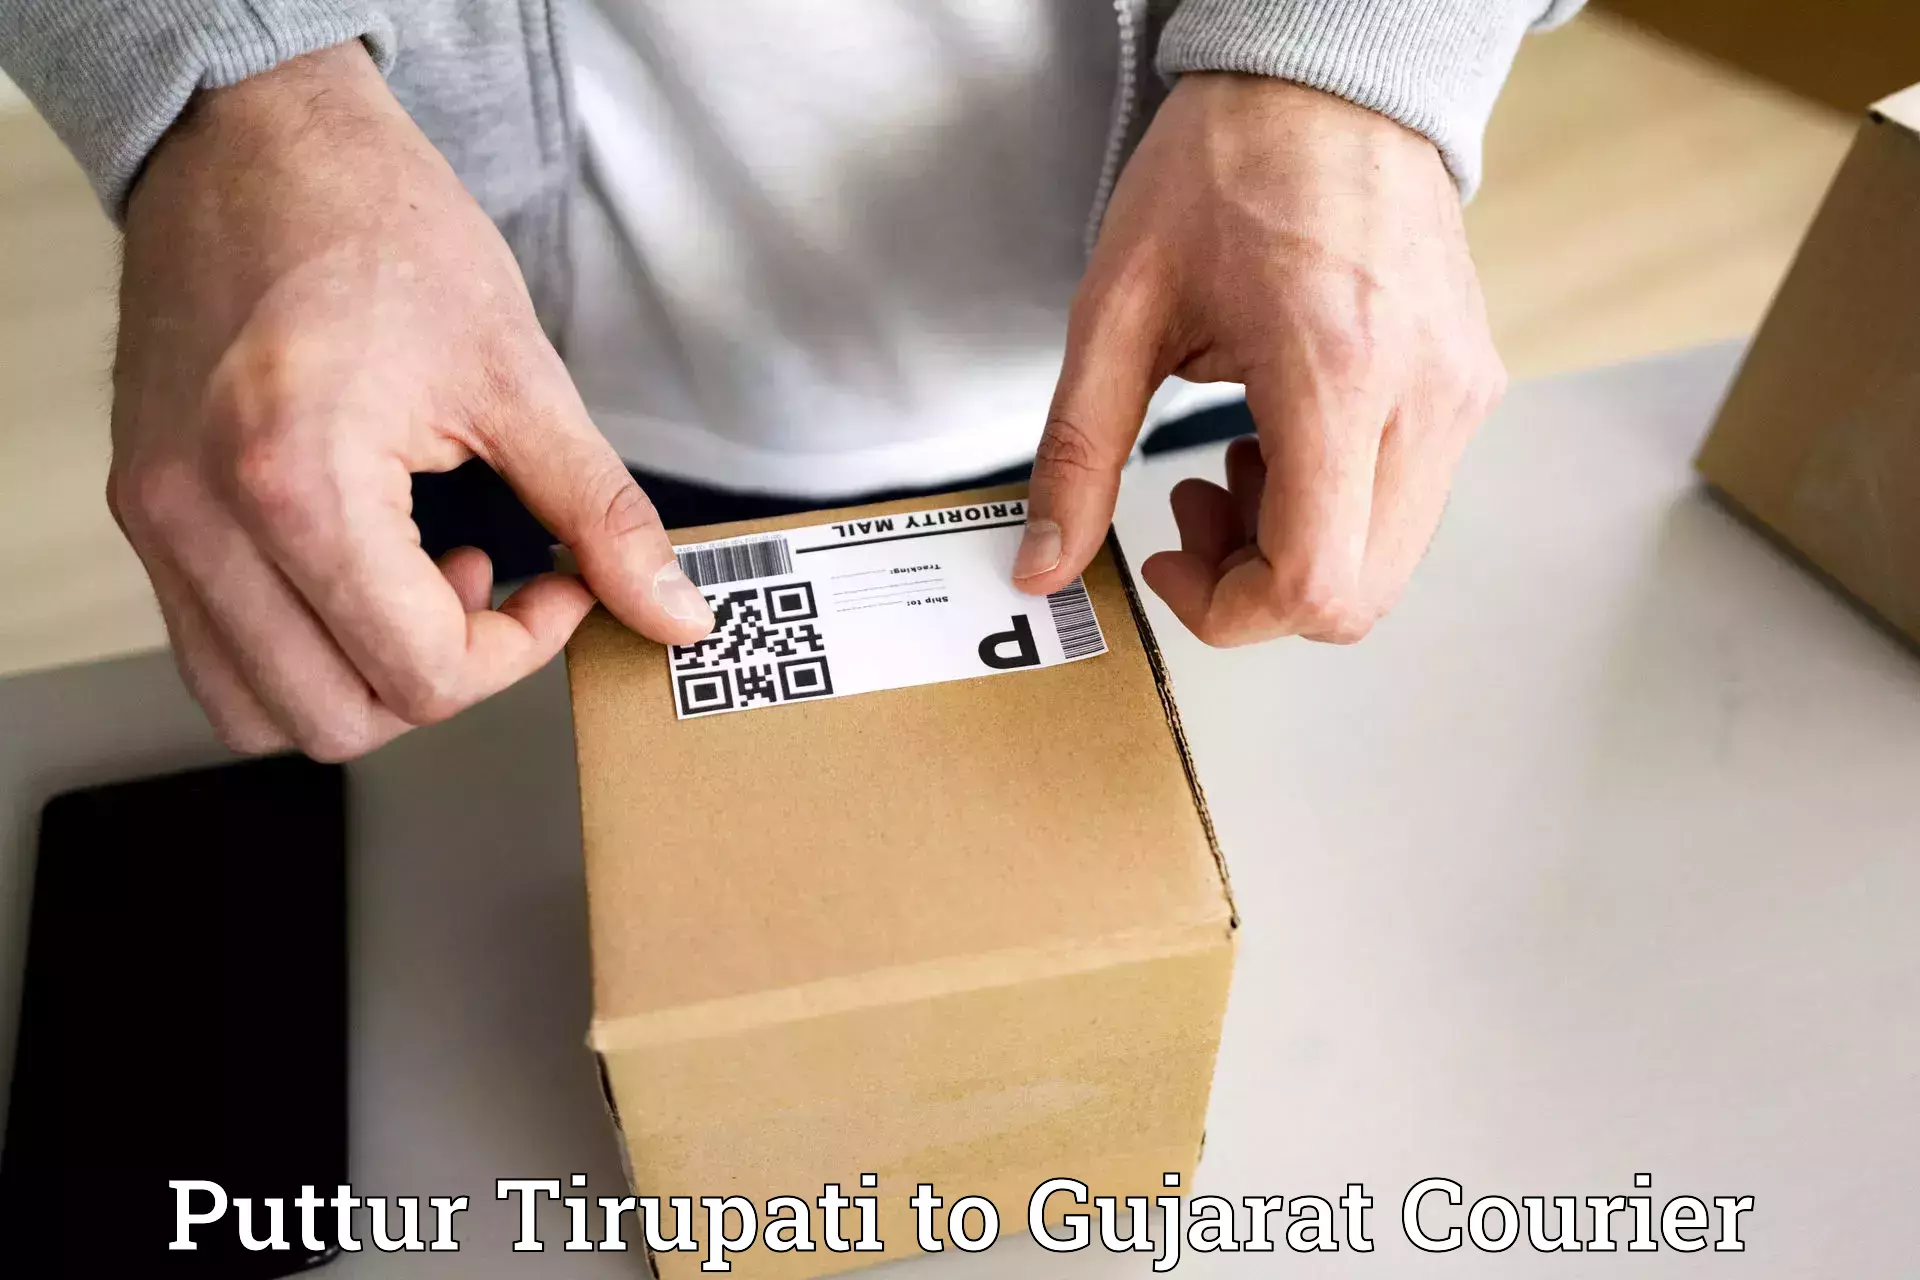 Global parcel delivery Puttur Tirupati to Dholera